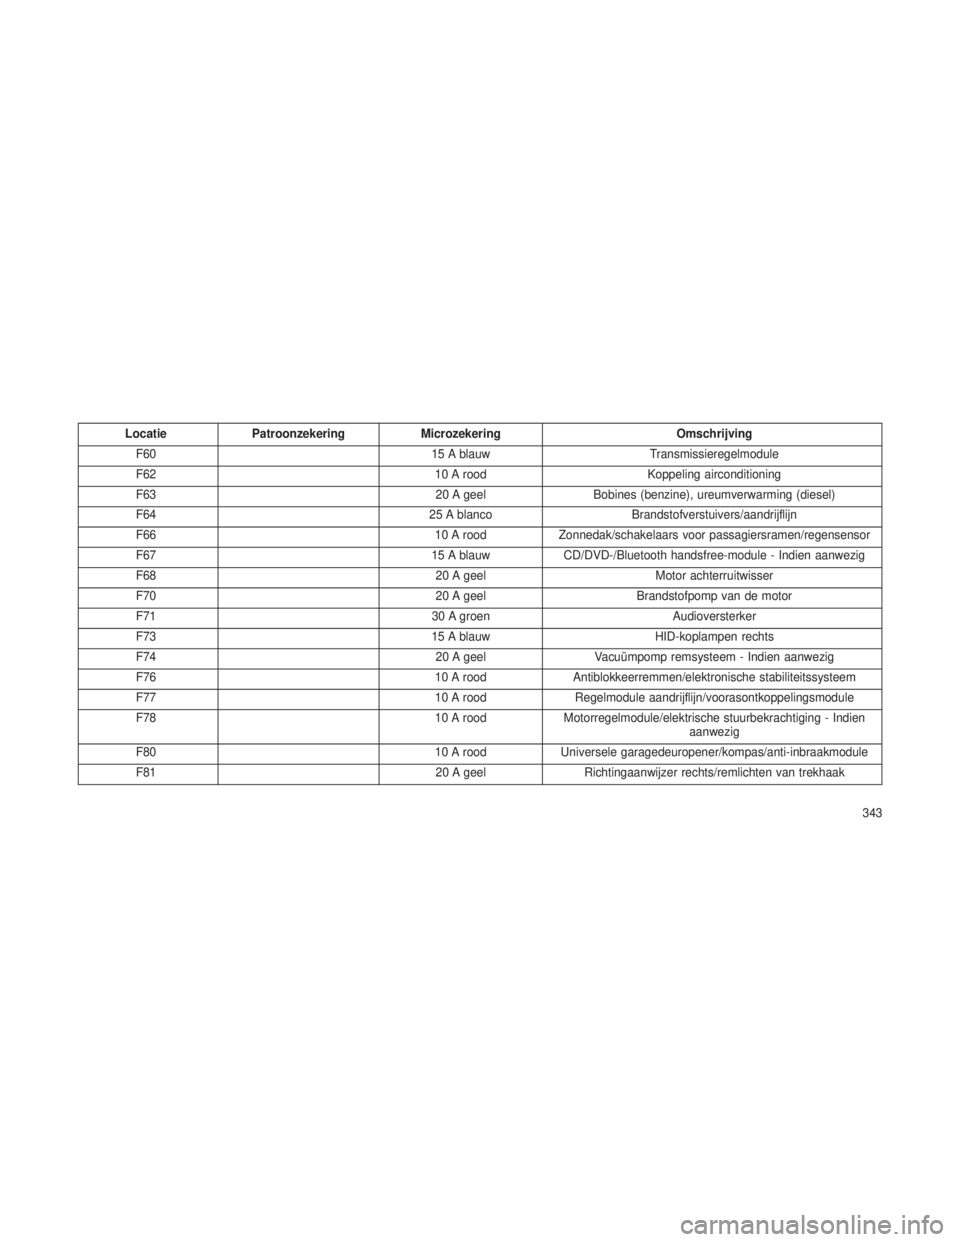 JEEP GRAND CHEROKEE 2013  Instructieboek (in Dutch) LocatiePatroonzekering Microzekering Omschrijving
F60 15 A blauwTransmissieregelmodule
F62 10 A roodKoppeling airconditioning
F63 20 A geelBobines (benzine), ureumverwarming (diesel)
F64 25 A blancoBr